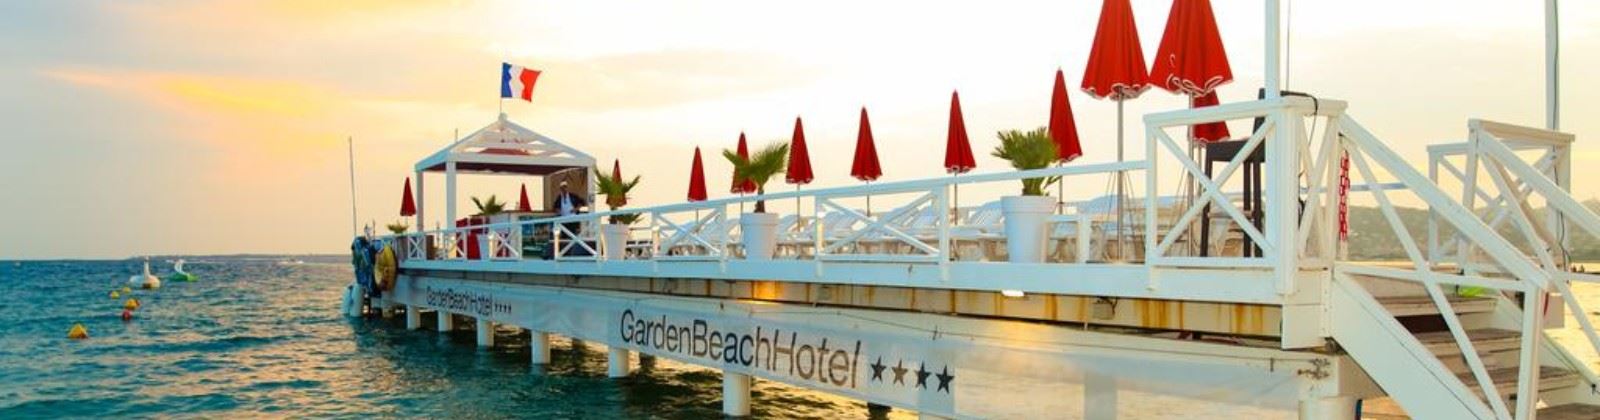 garden beach hotel juan les pins olevene event 